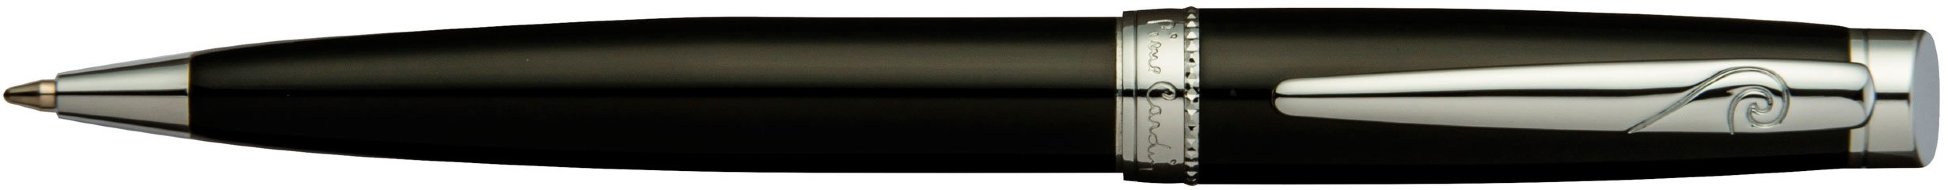 Шариковая ручка Pierre Cardin Luxor черный лак, хром